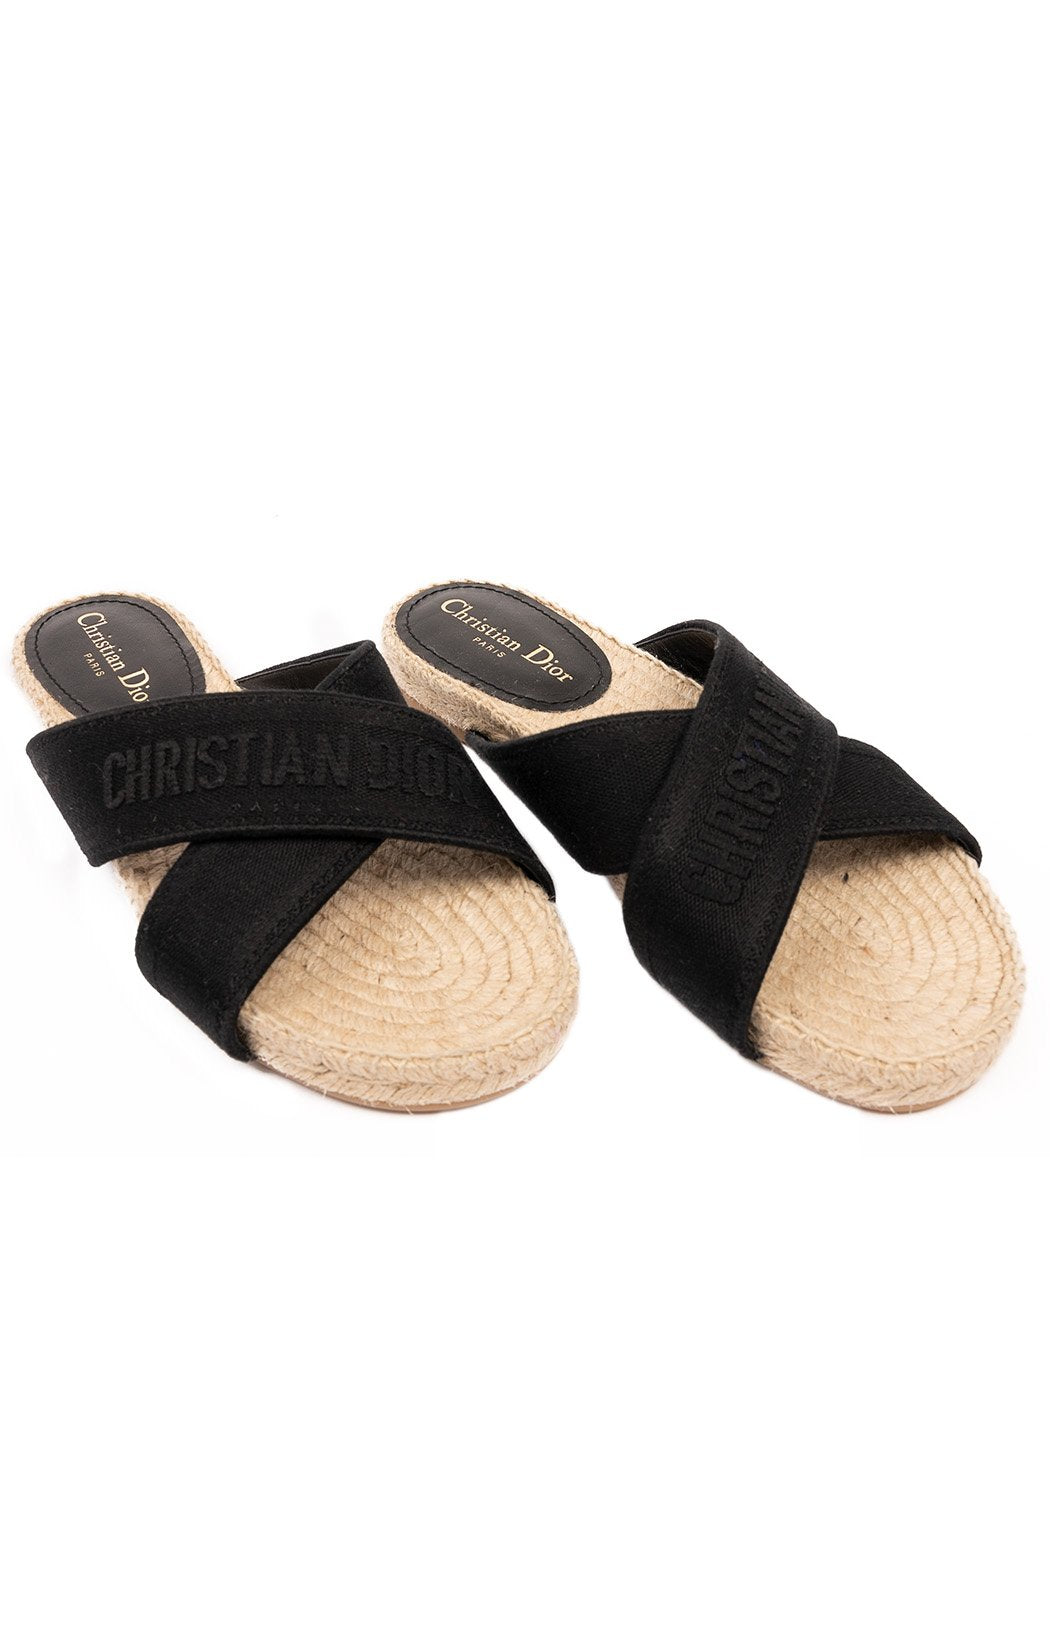 CHRISTIAN DIOR Sandals/slides Size: 40 